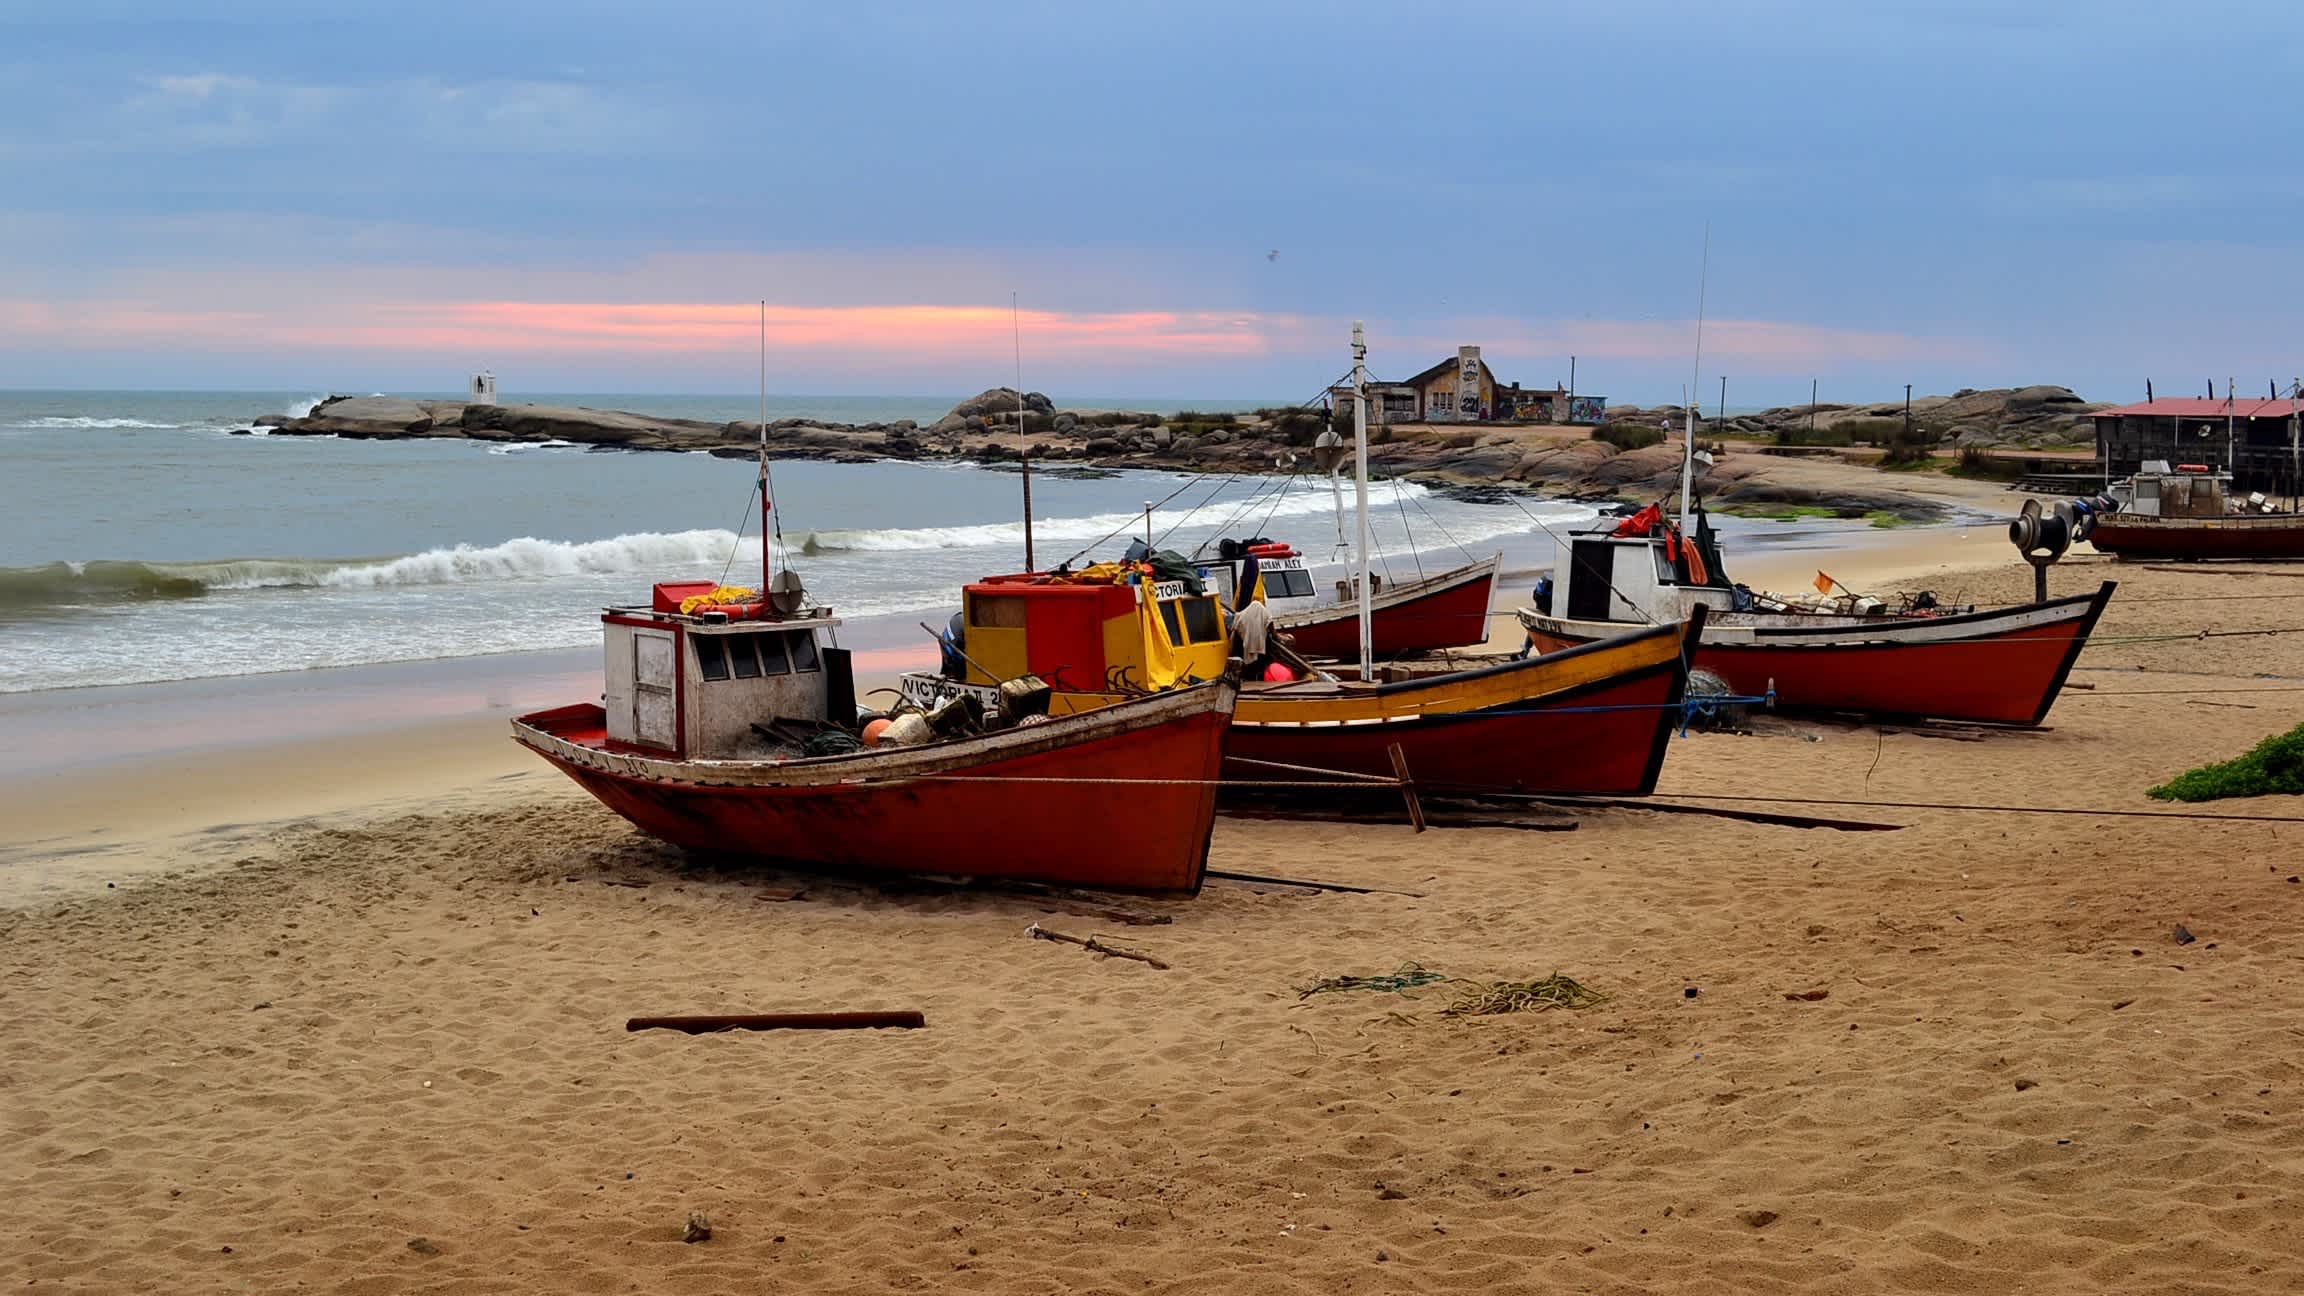 Fischerboote auf dem Playa de los Pescadores, Punta del Diablo, Uruguay bei Sonnendämmerung.